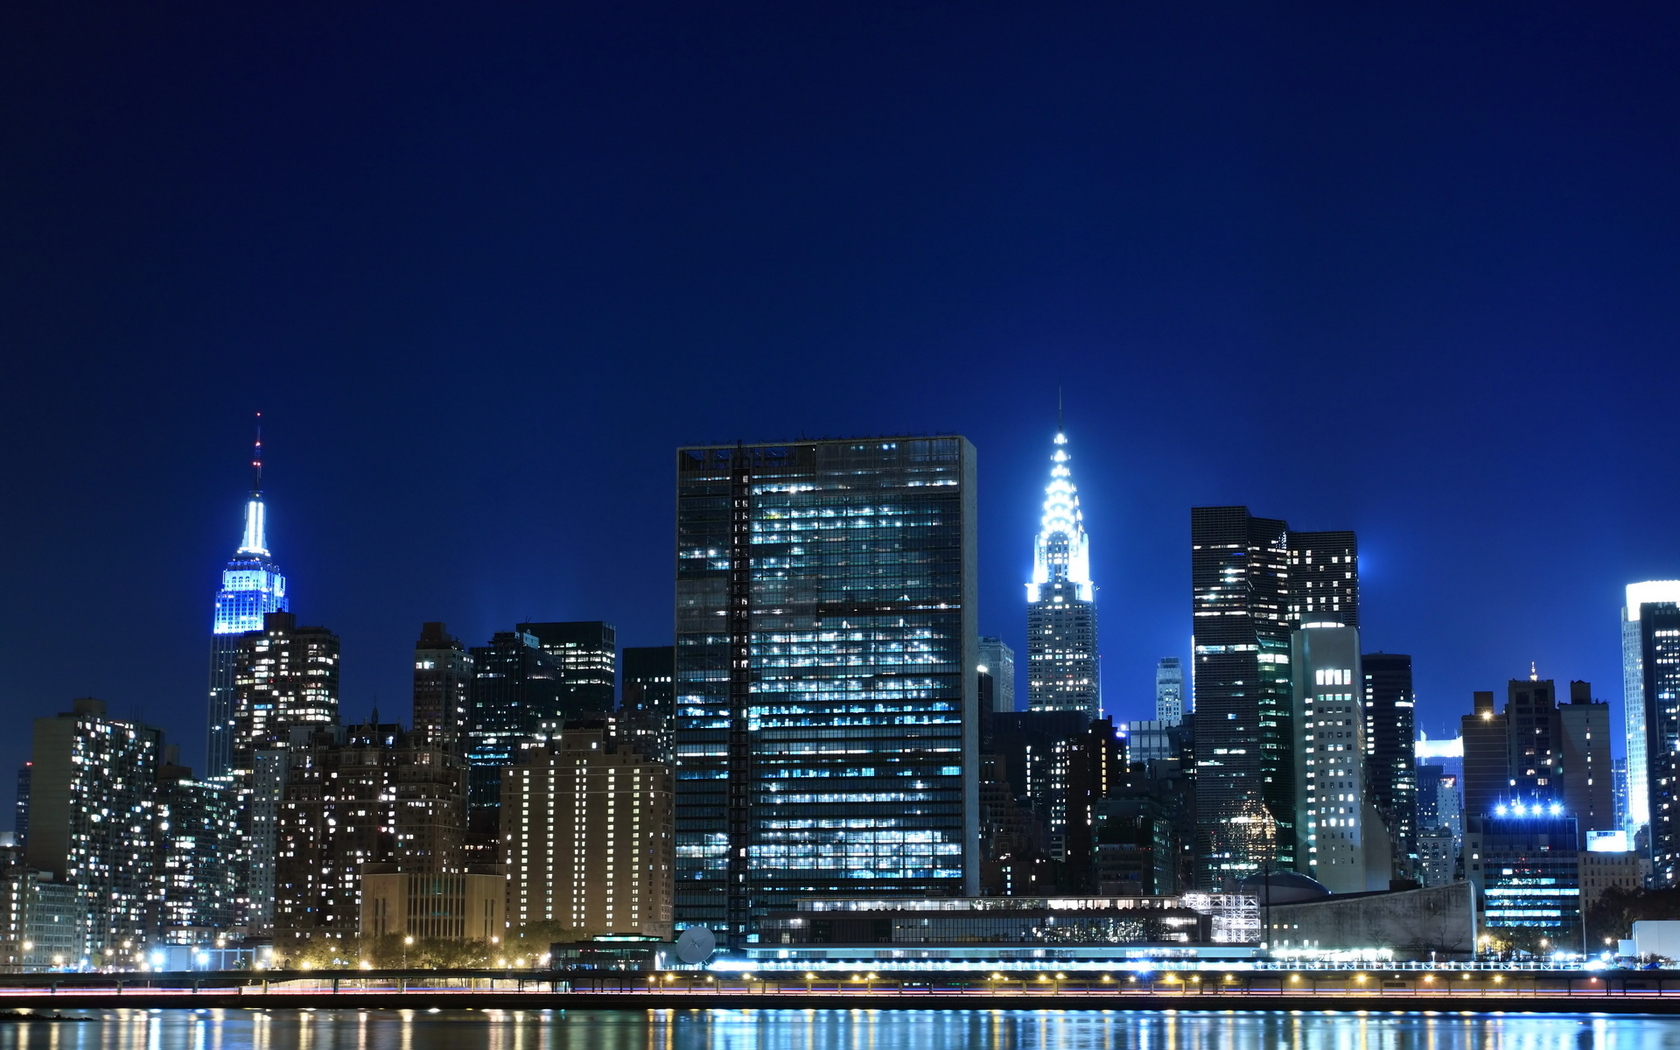 Hình nền New York sẽ đưa bạn đến với một trong những thành phố sôi động nhất trên thế giới. Từ tòa nhà cao chọc trời đến những công viên thành phố, New York thật sự sẽ khiến bạn muốn khám phá và tìm hiểu thêm về nơi đây.